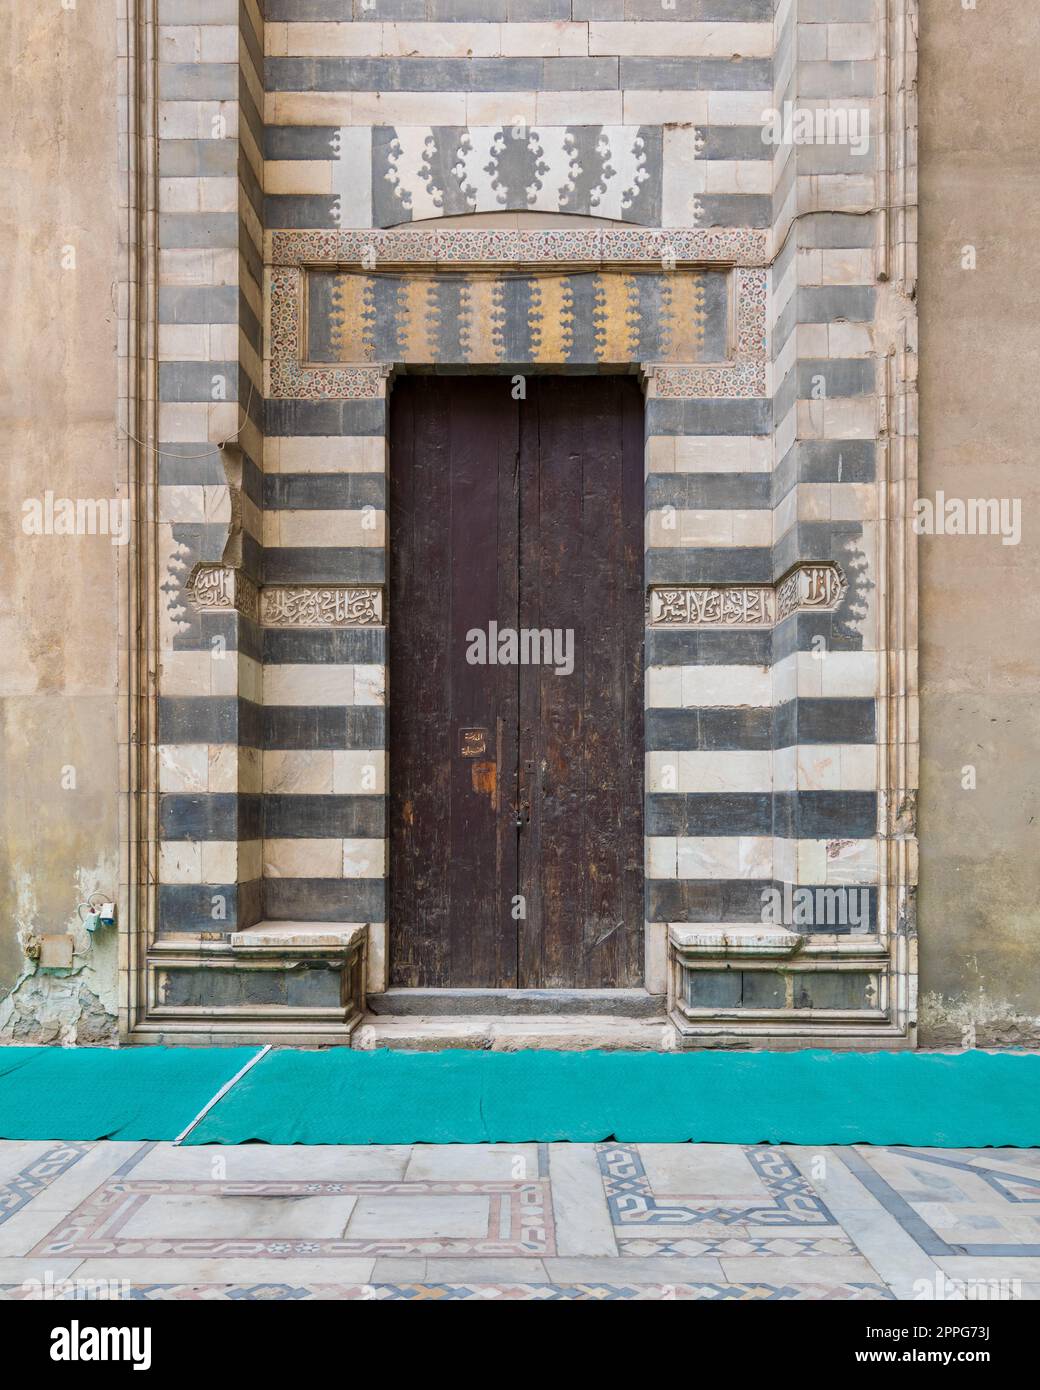 Porta in legno invecchiata circondata da decorazioni in marmo bianco e nero a righe, Moschea Sultan Hassan, Cairo, Egitto Foto Stock